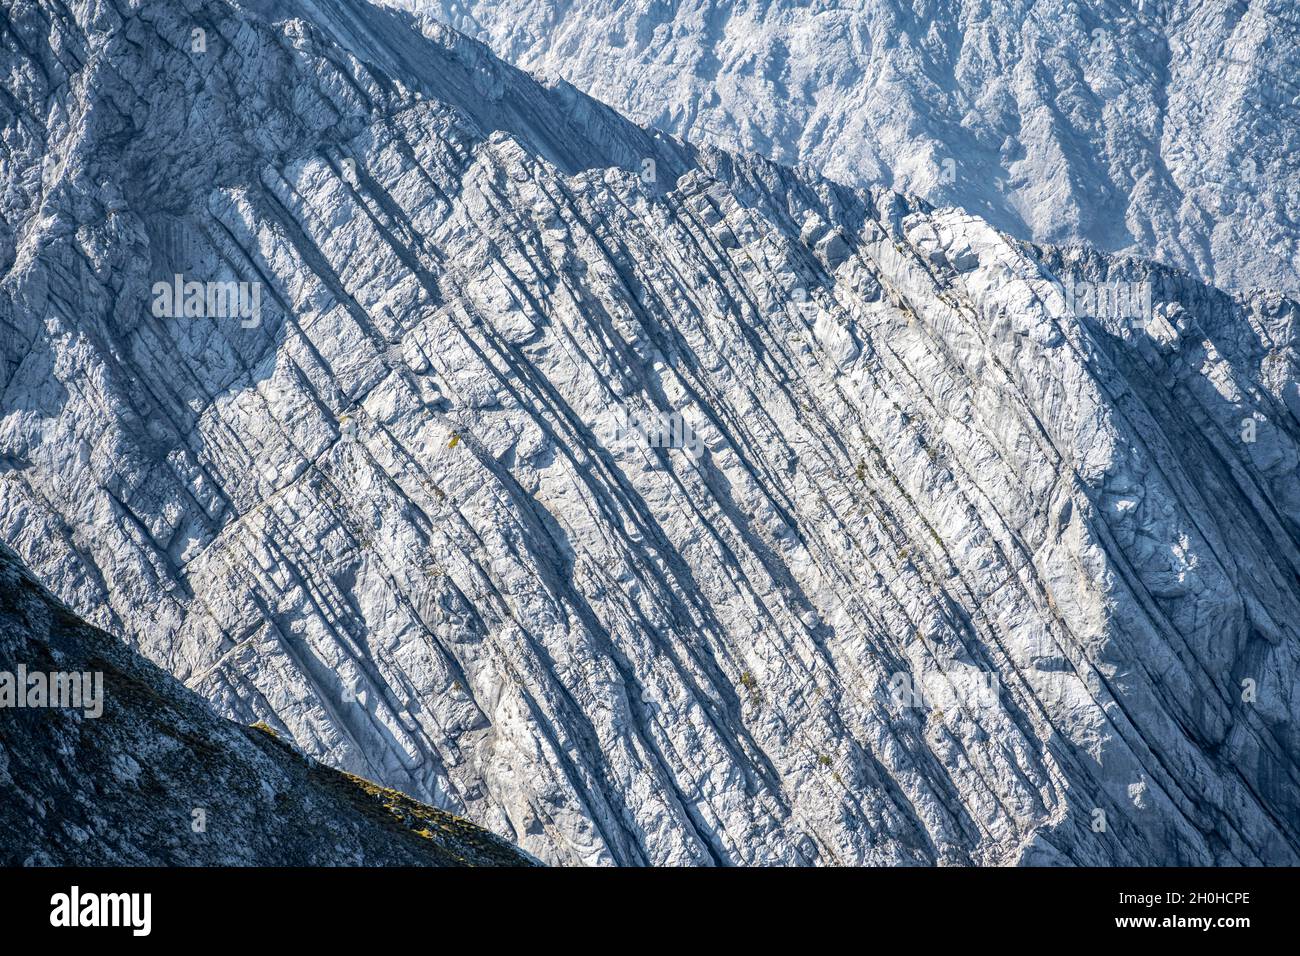 Interessante Felsformationen, Steinschichten bilden Linien, Berchtesgadener Alpen, Berchtesgadener Land, Oberbayern, Bayern, Deutschland Stockfoto